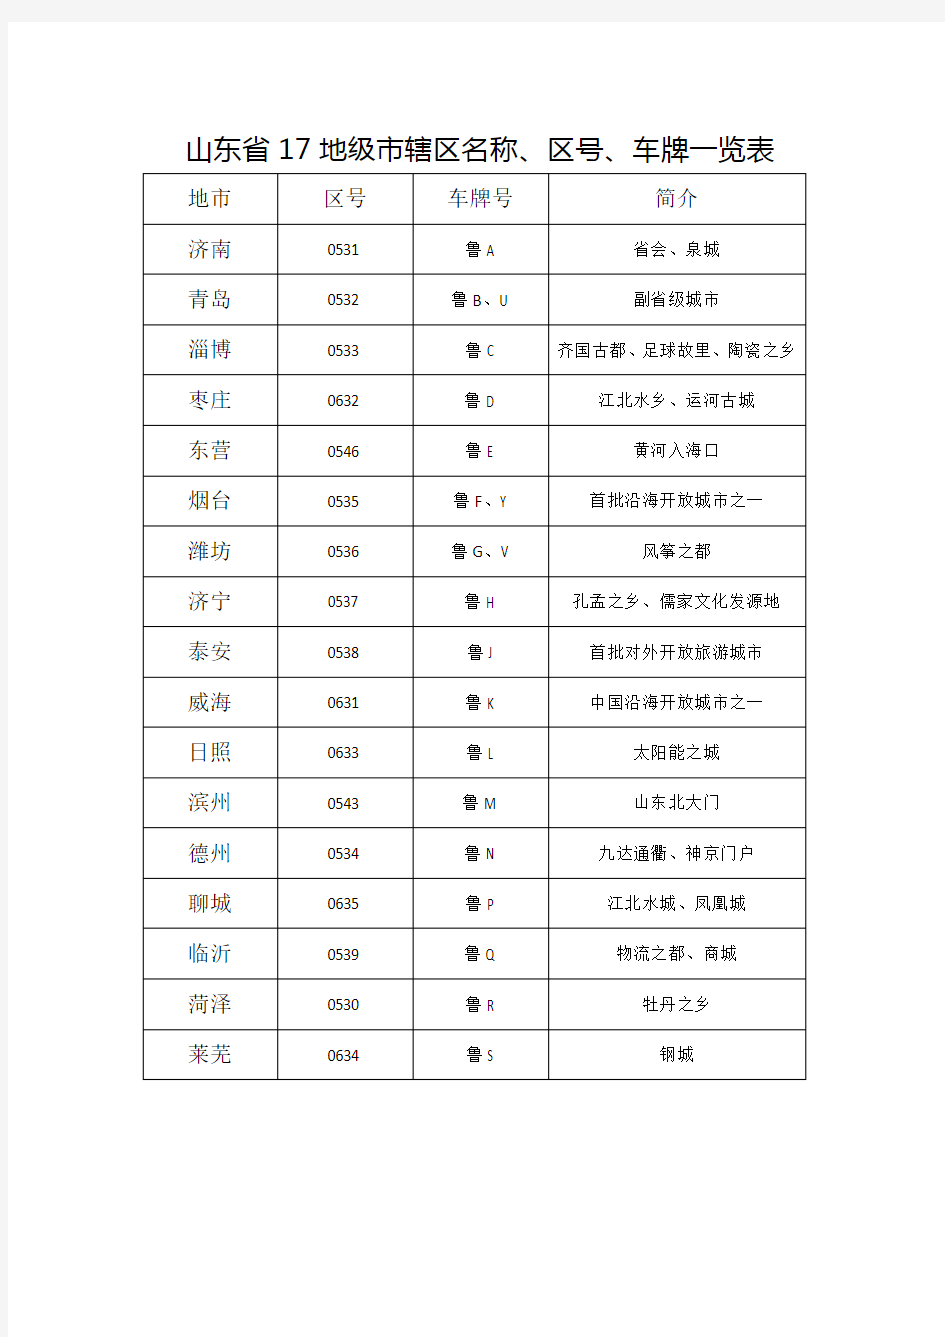 山东省17地级市辖区名称、区号、车牌一览表